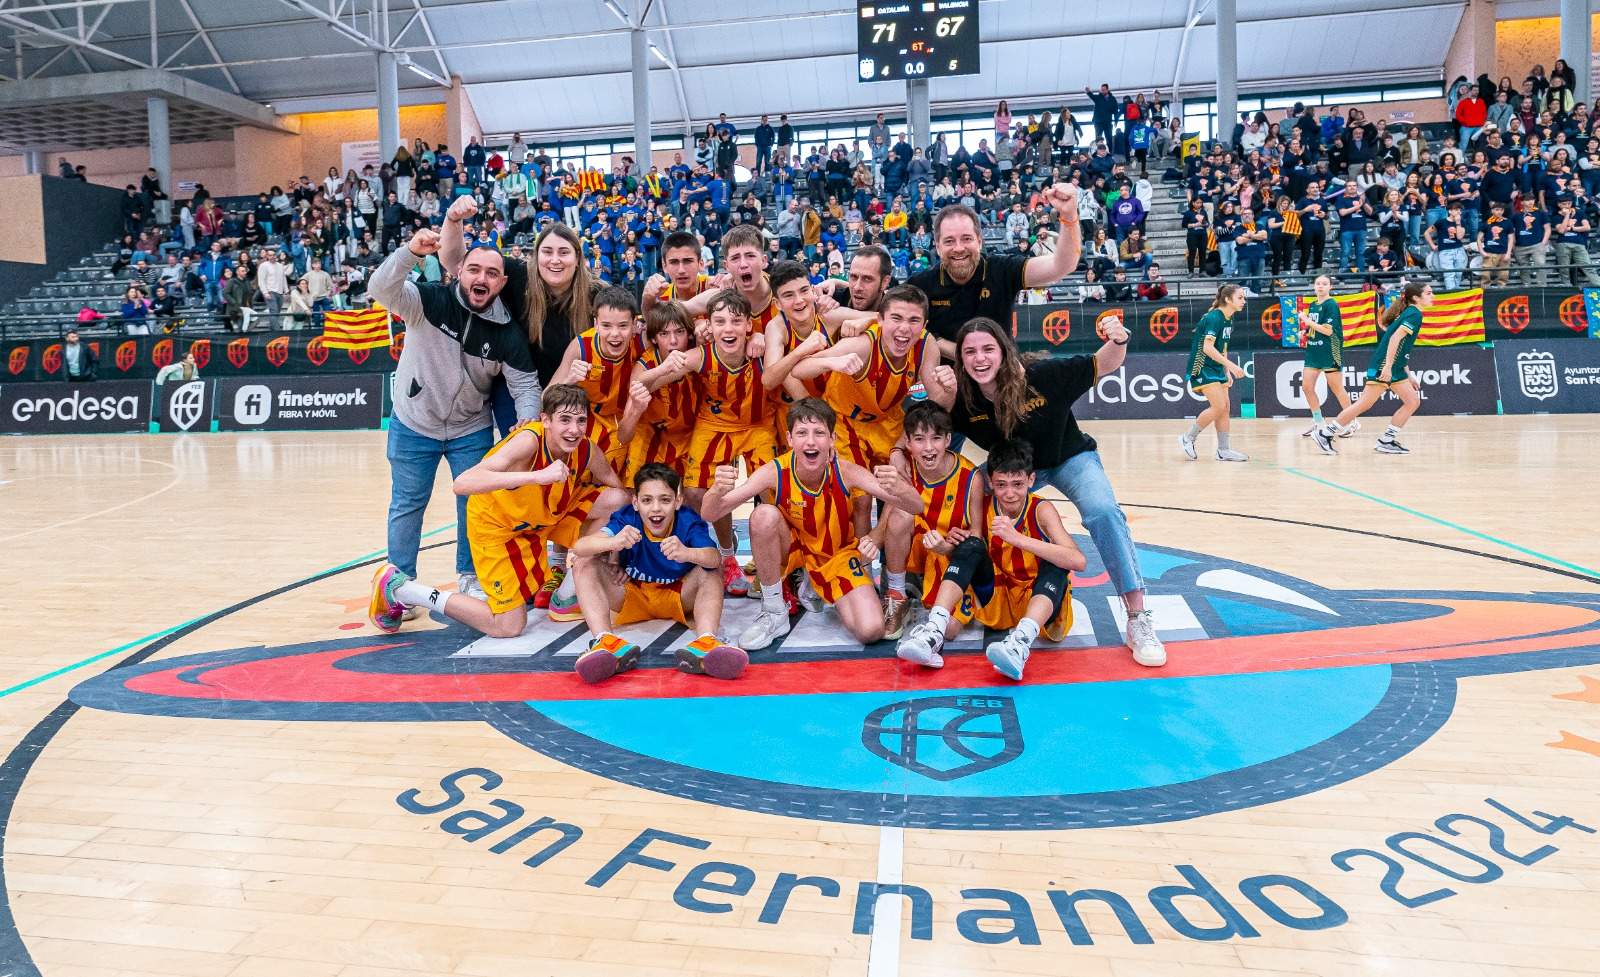 El fill de Jasikevicius corona Catalunya al Campionat d'Espanya de bàsquet en categoria Mini